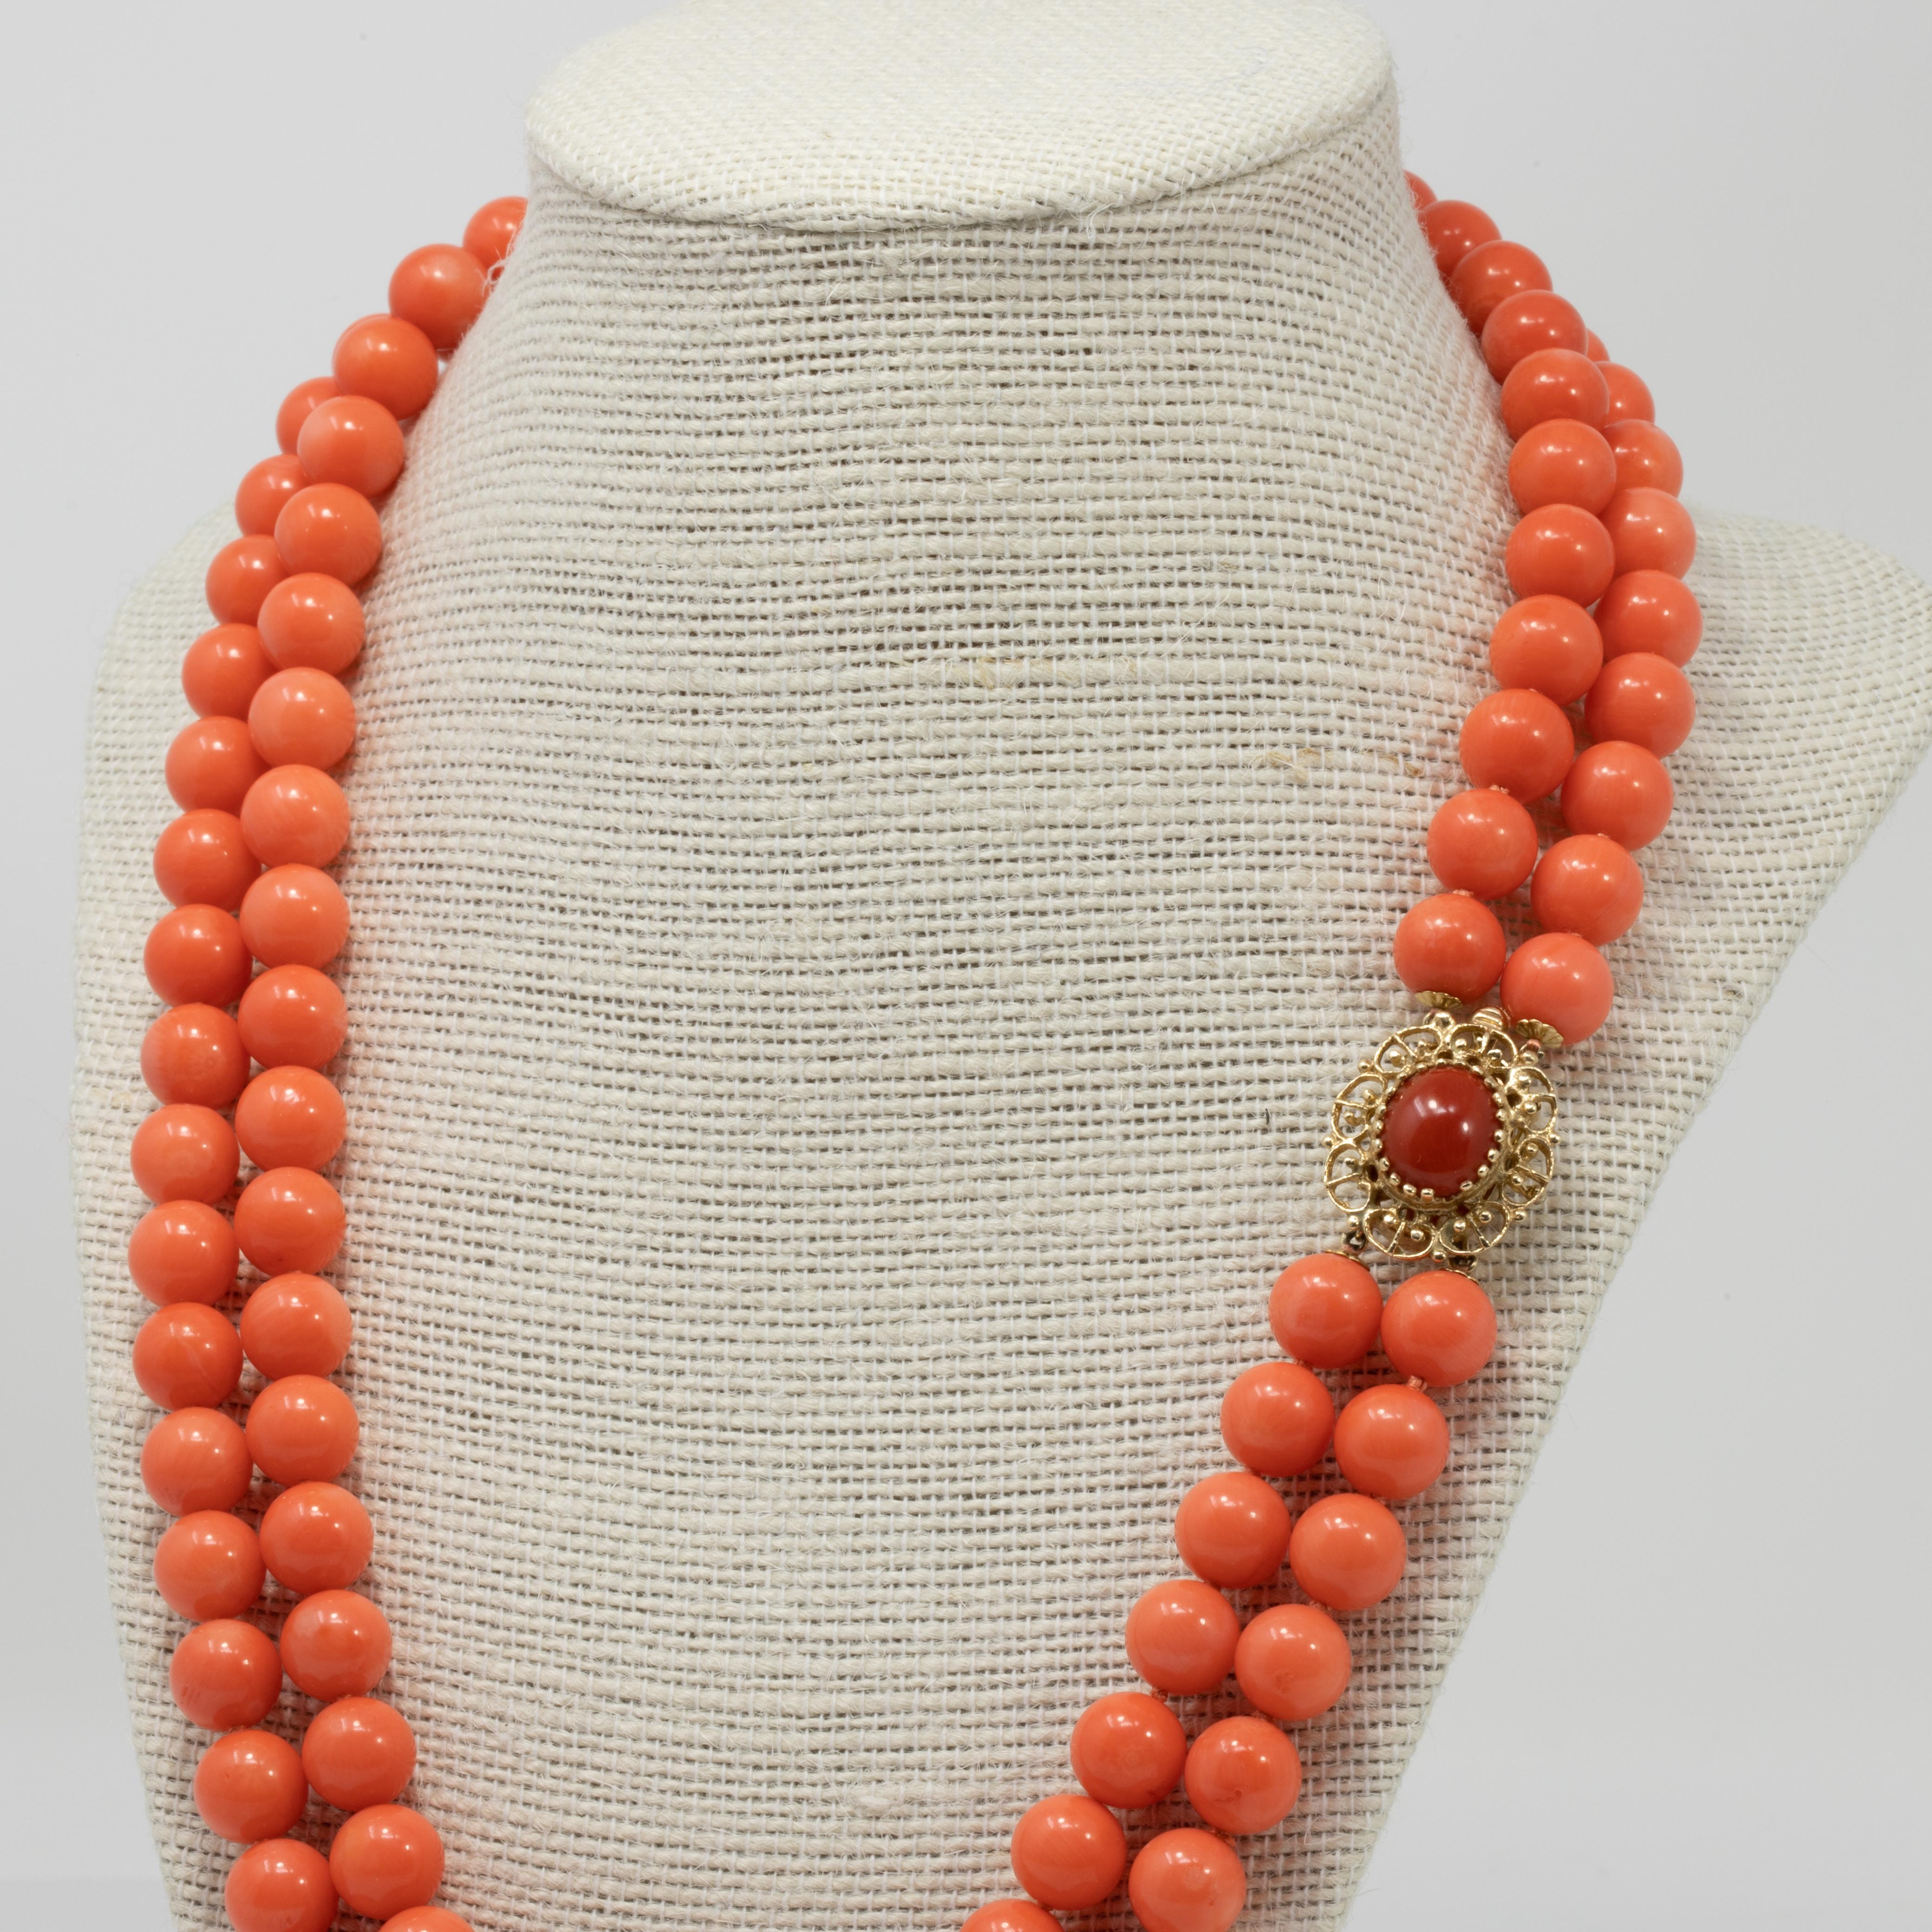 Un élégant collier vintage en perles de corail saumoné. Deux rangs de perles de corail sont attachés par un luxueux fermoir en or jaune 14 carats, avec un cabochon de corail serti au centre.

Les perles de corail mesurent 9,75 mm de diamètre.

Il